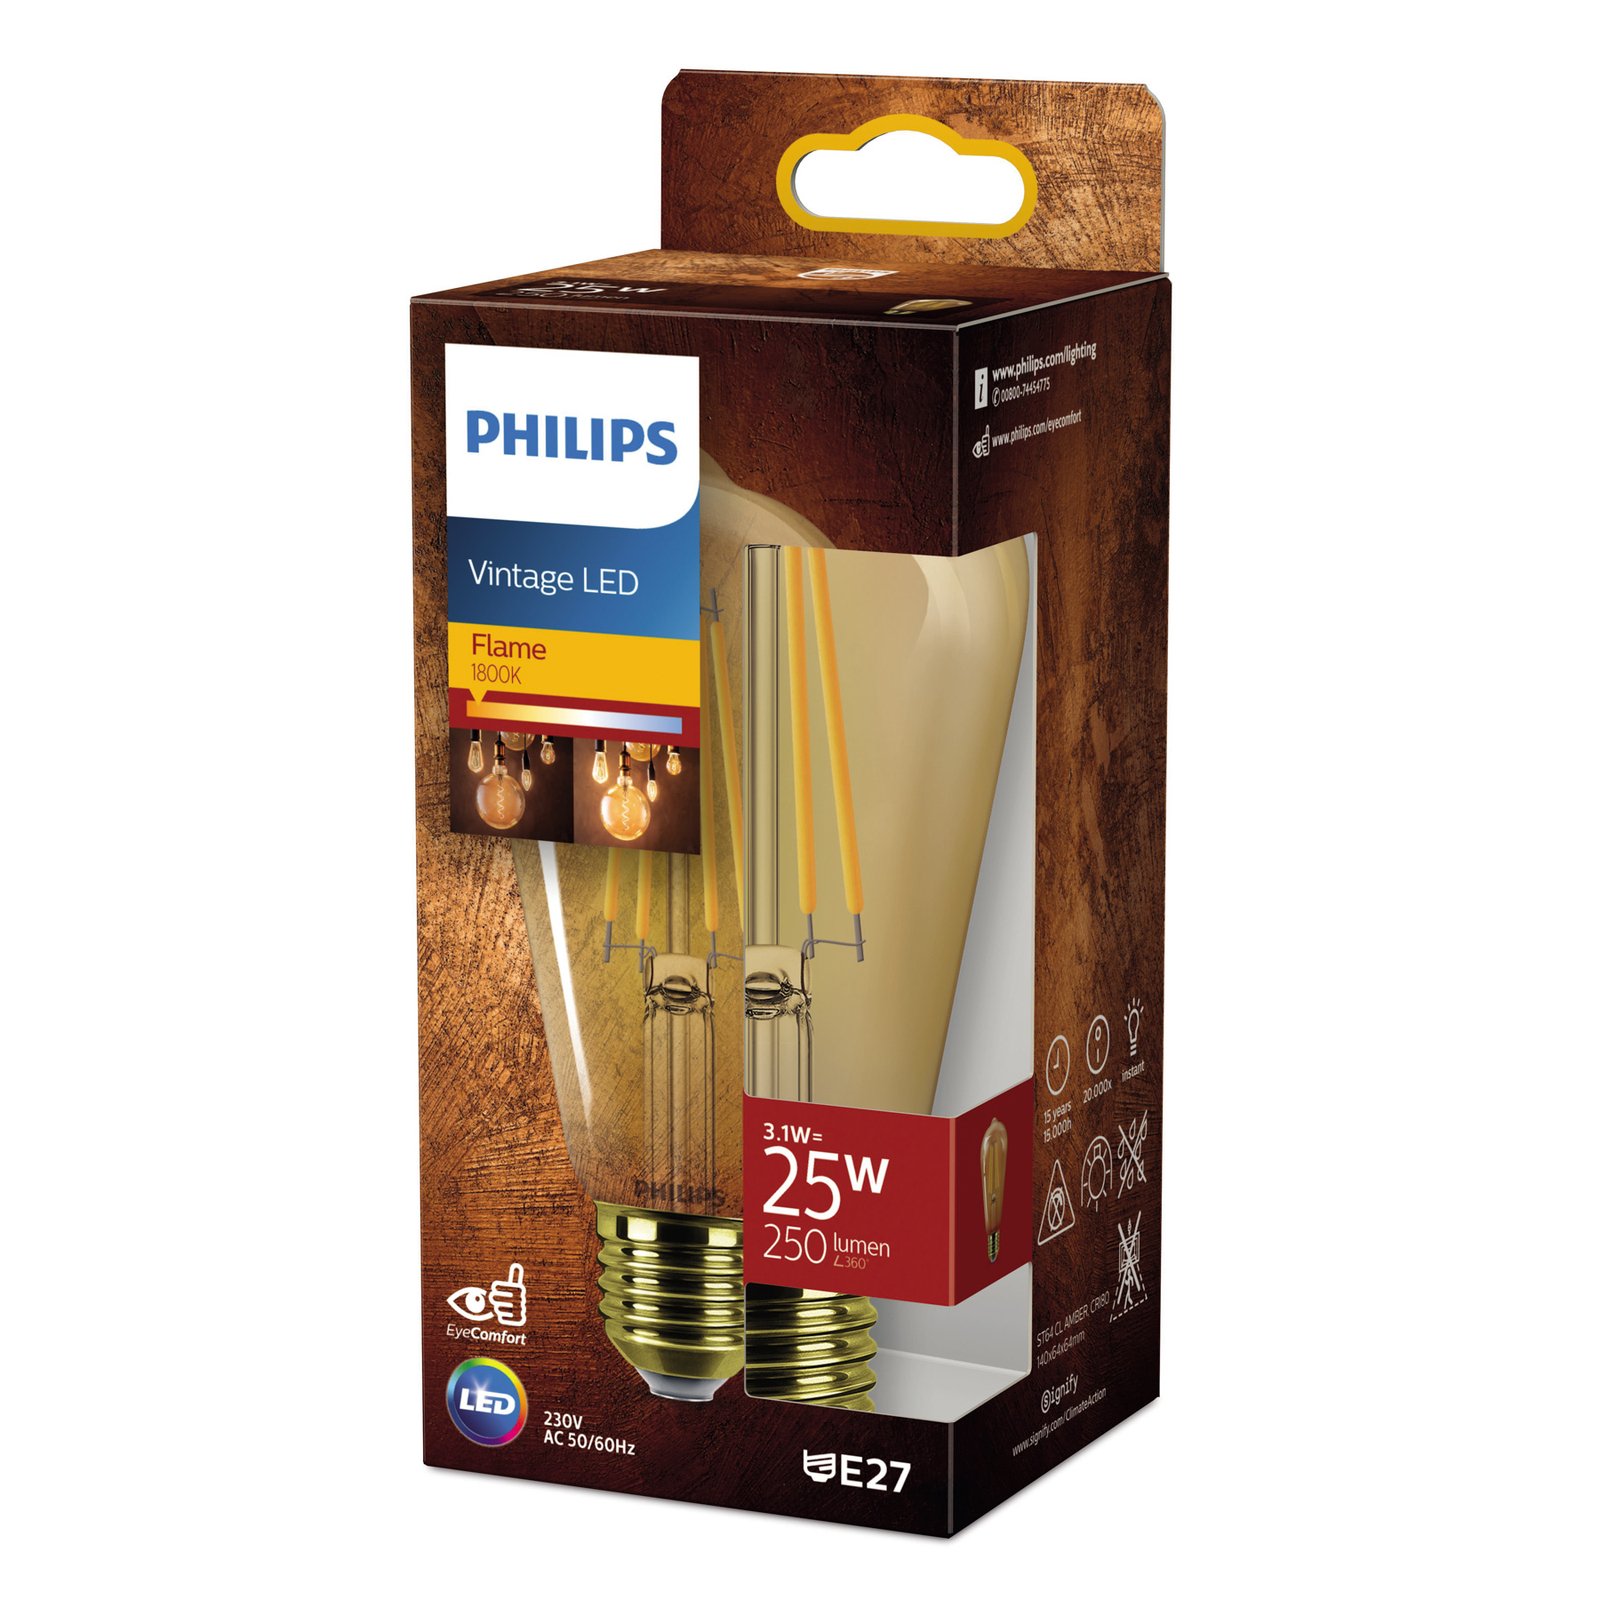 Philips E27 LED-Lampe Rustika ST64 3,1W 1800K gold